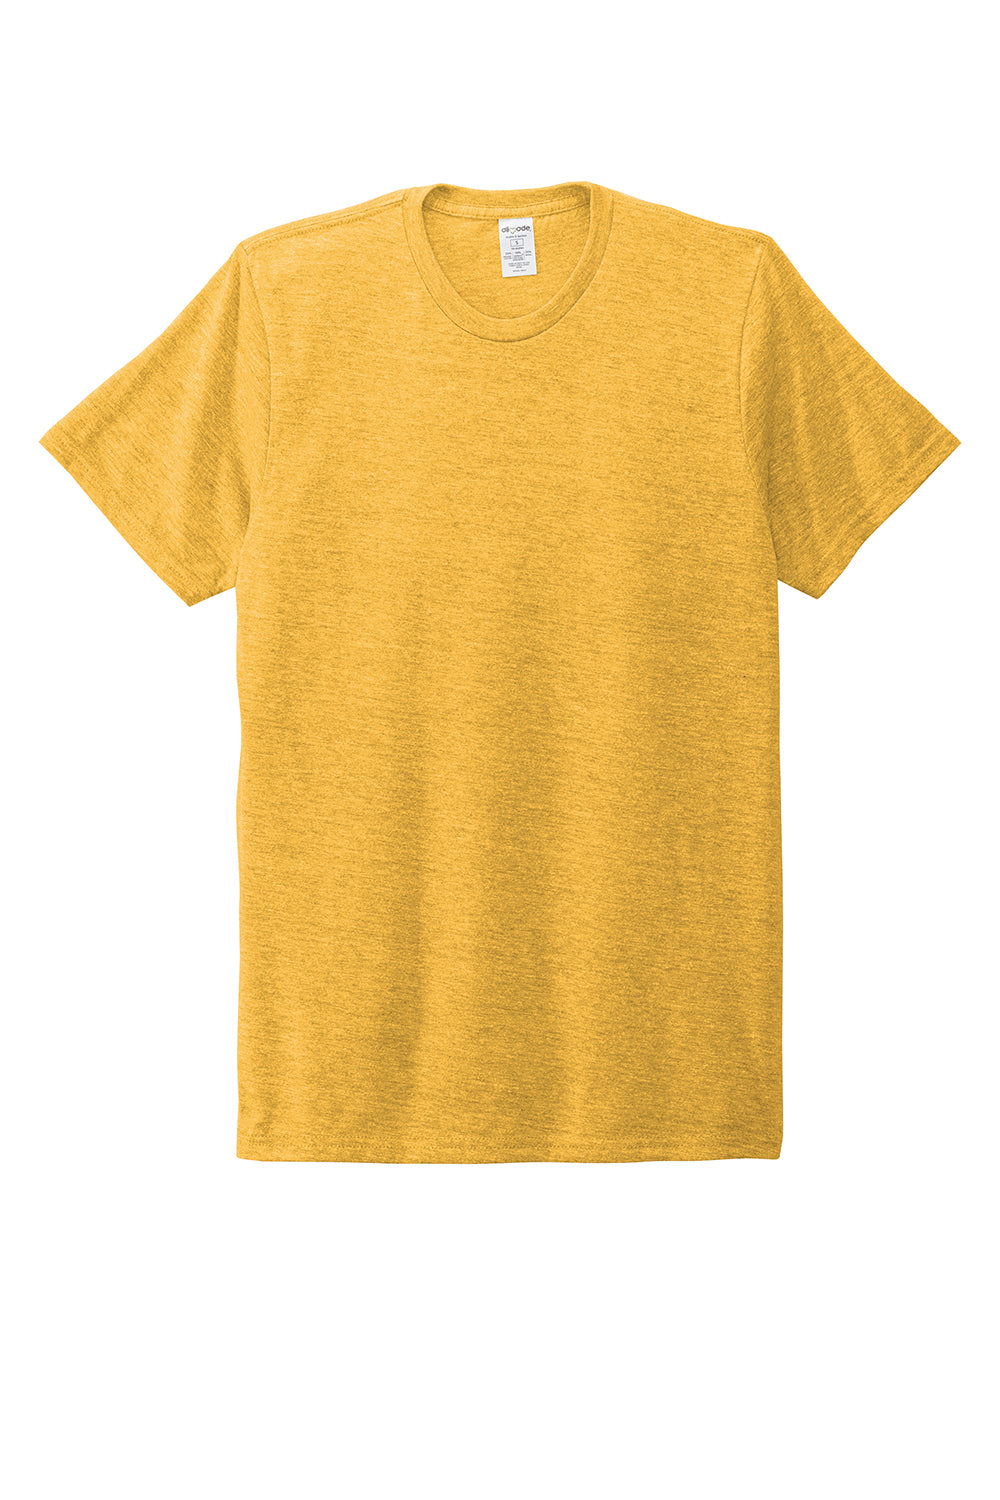 Allmade AL2004 Mens Short Sleeve Crewneck T-Shirt Suncatcher Gold Flat Front